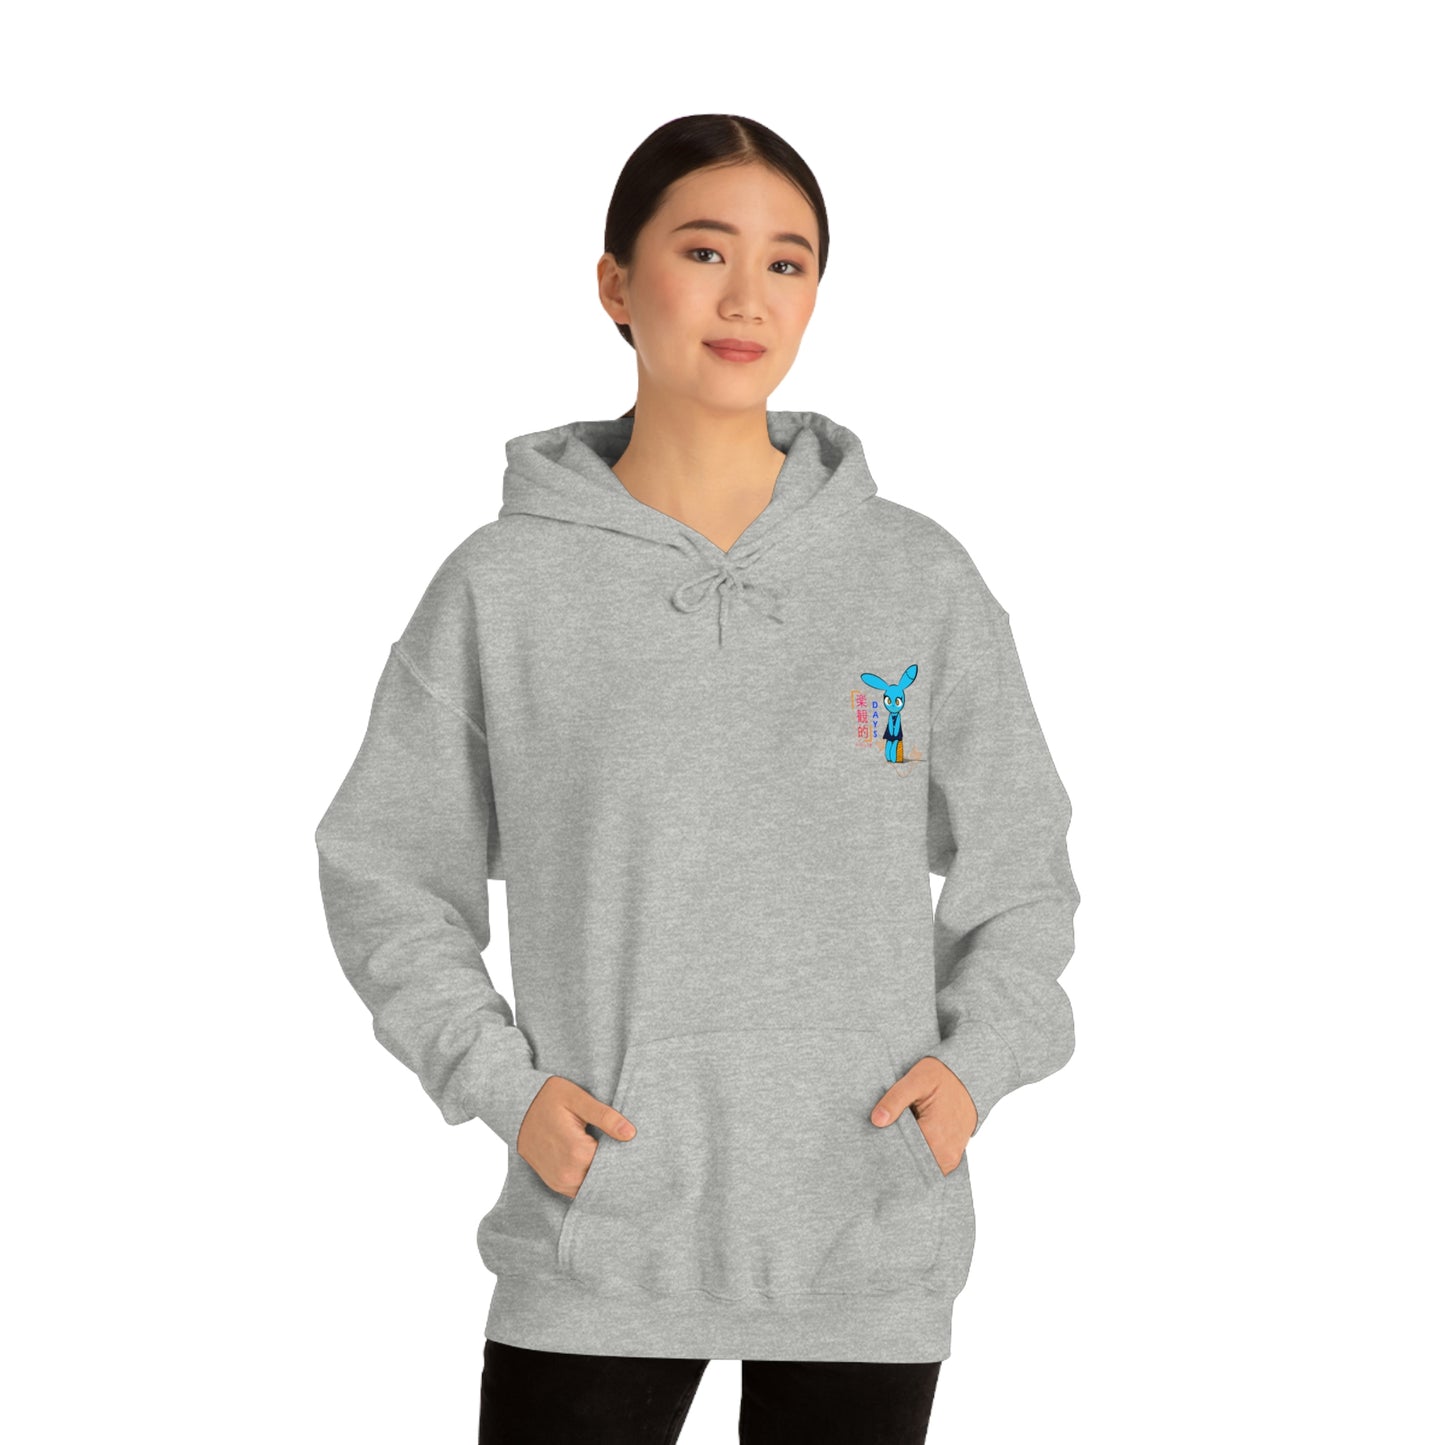 Hopeful Days - Unisex Heavy Blend™ Hooded Sweatshirt